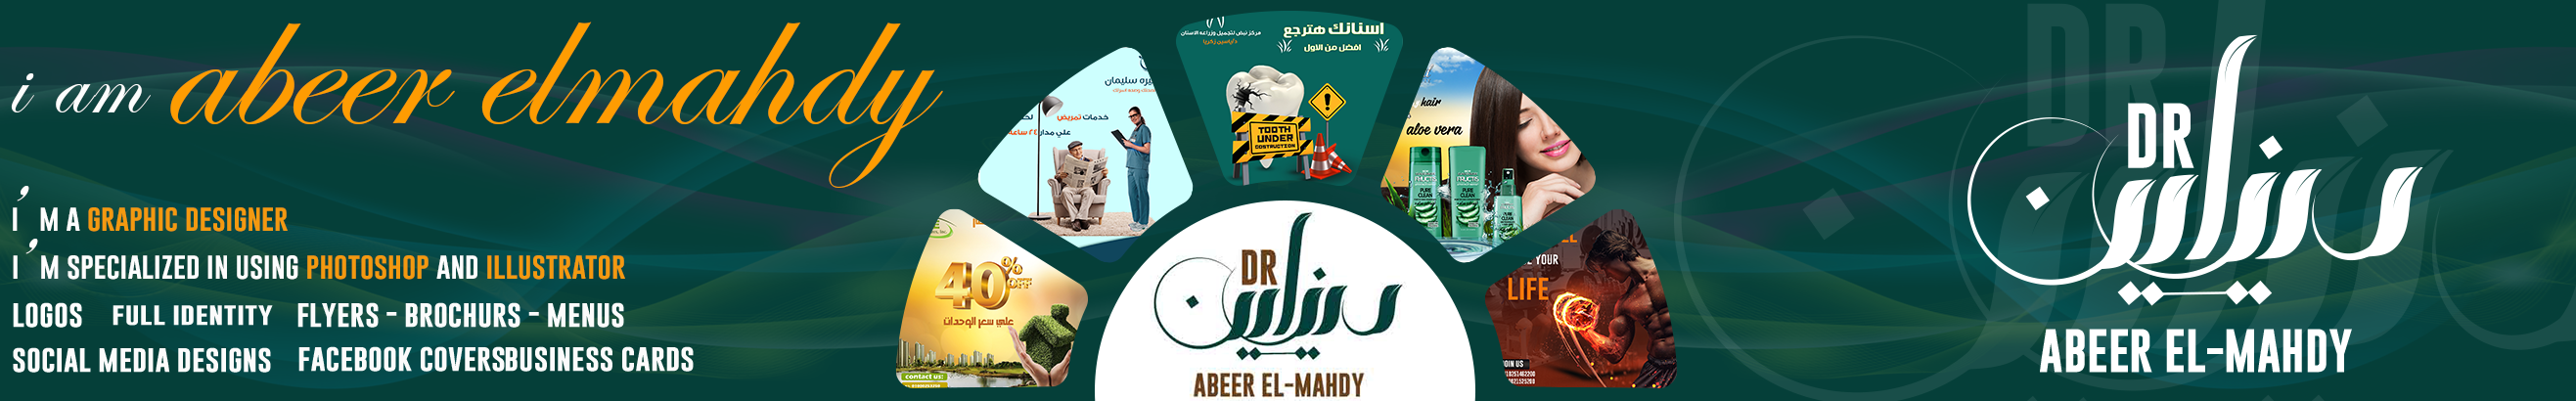 Bannière de profil de Abeer Elmahdy